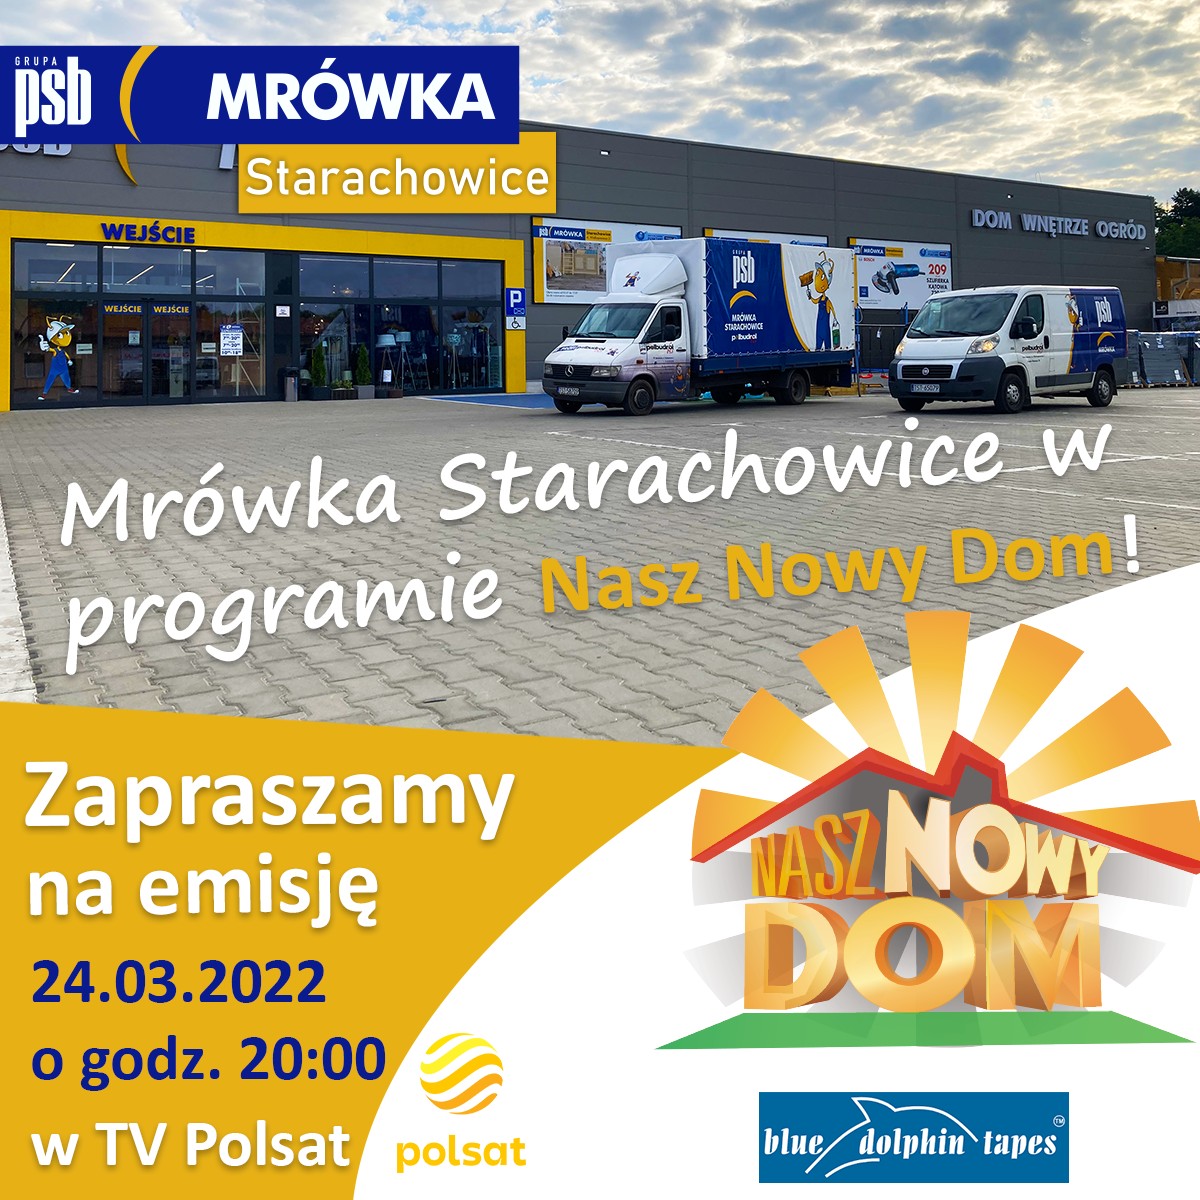 mrowka-starachowice-w-odcinku-nasz-nowy-dom